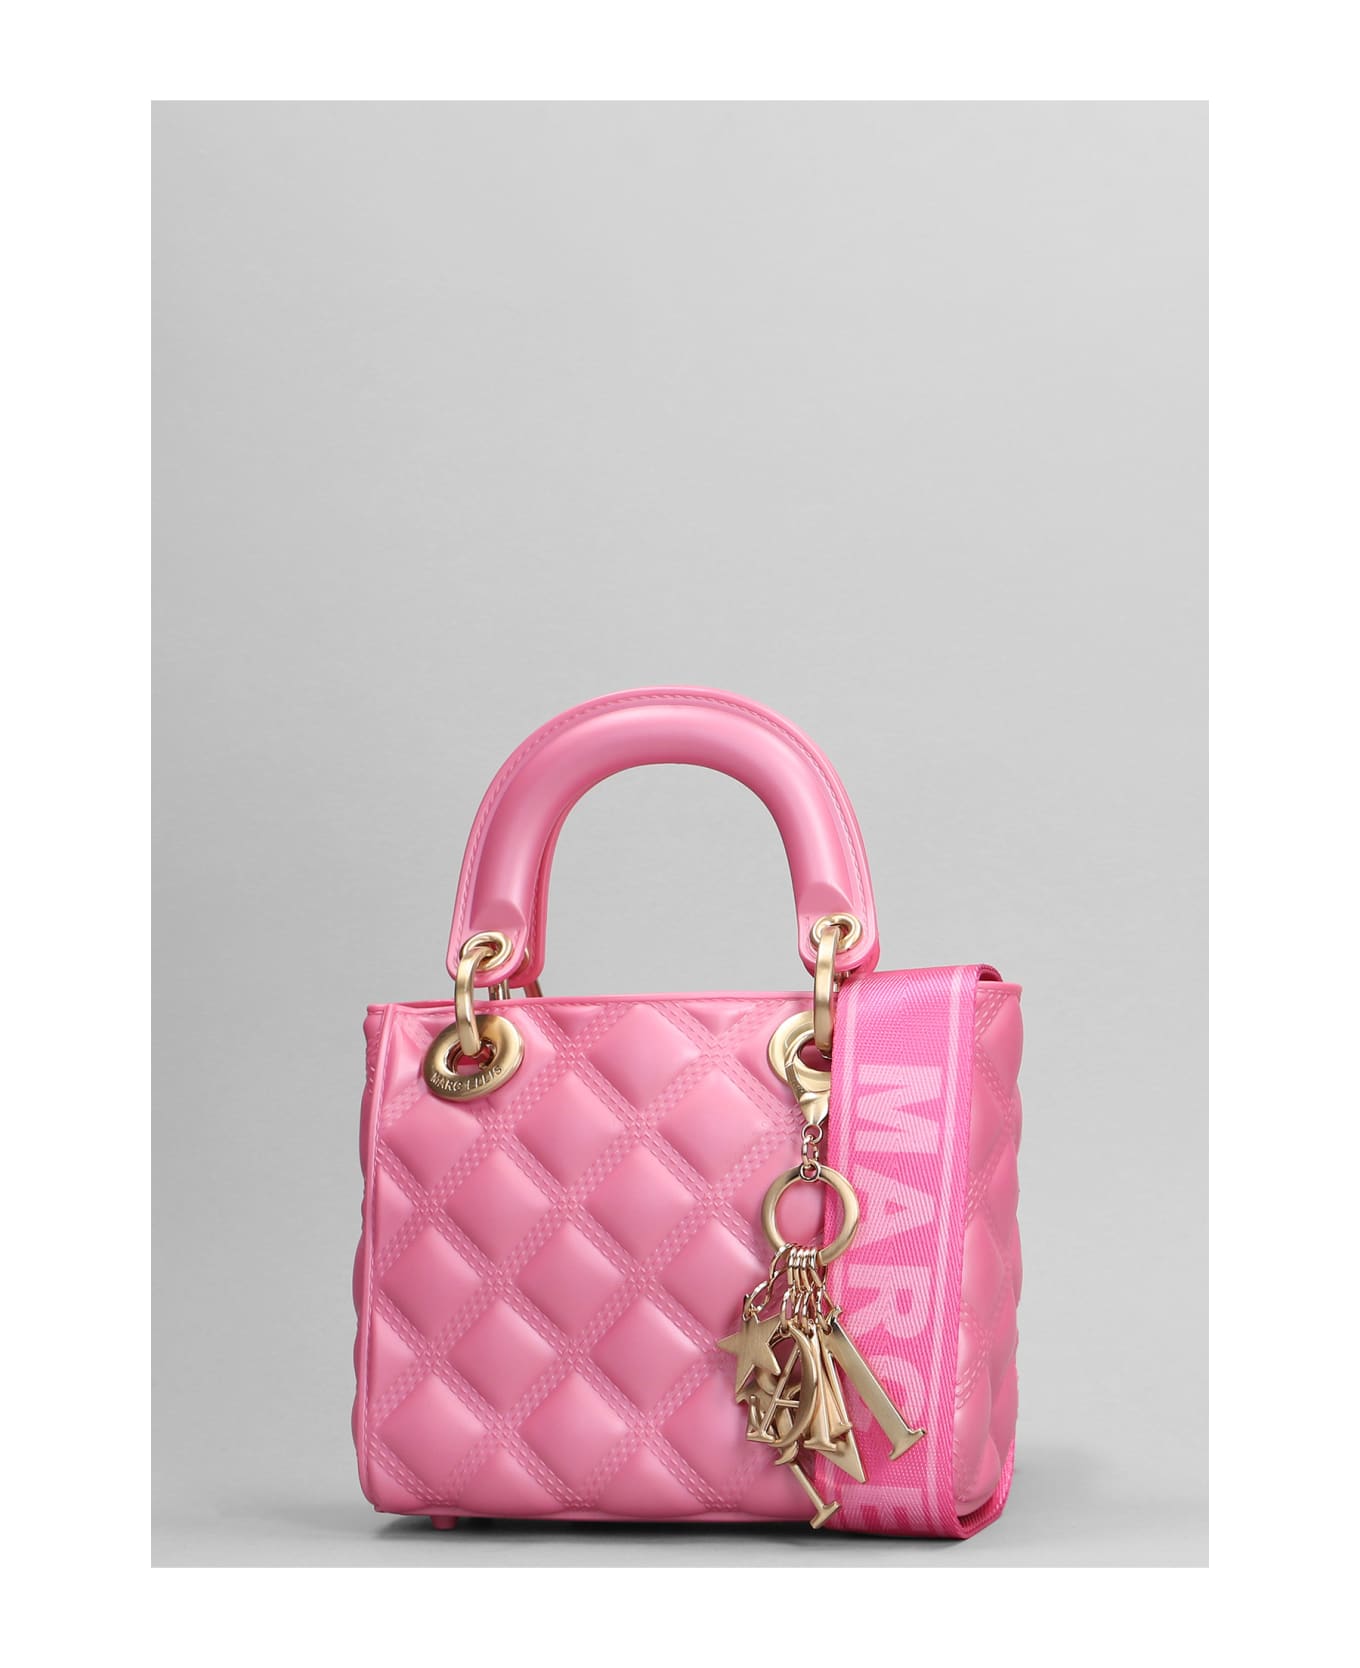 Marc Ellis Flat Missy S Shoulder Bag In Rose-pink Pvc - rose-pink